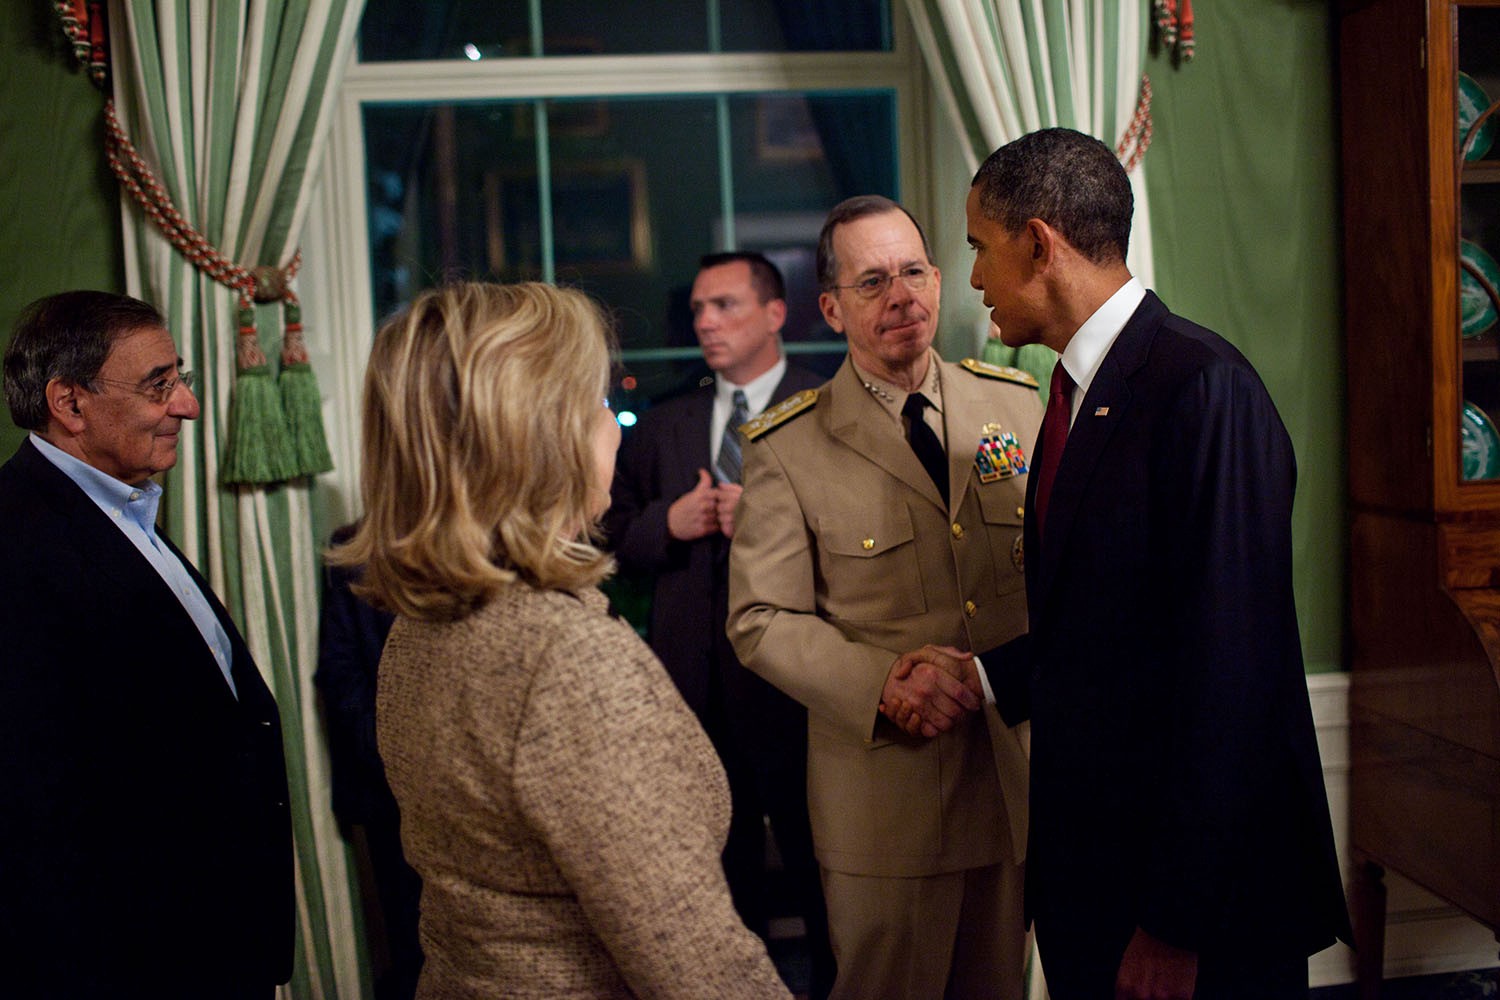 Situation Room Osama Bin Laden Killed Barack Obama PHOTO Hillary Clinton Biden 